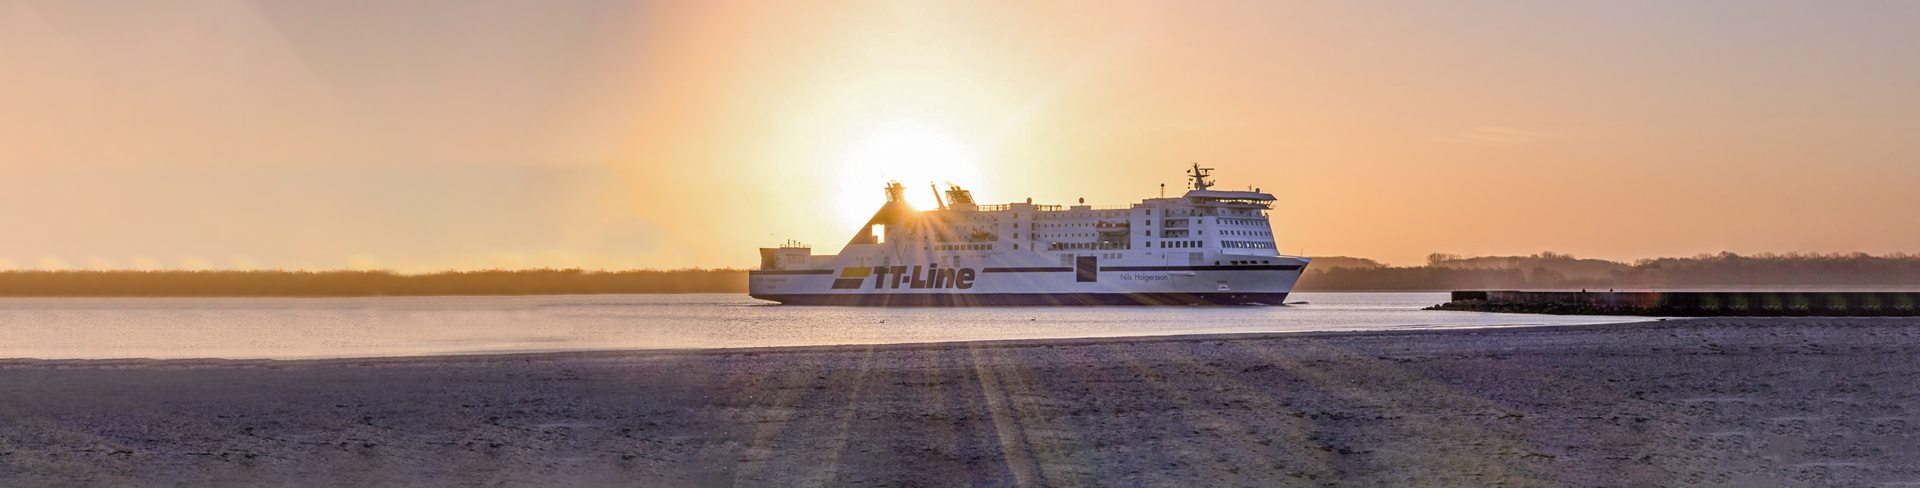 Timetable-Klaipėda-Rostock-TT-Line-ferry-Nils-Holgersson-at-see-sundown